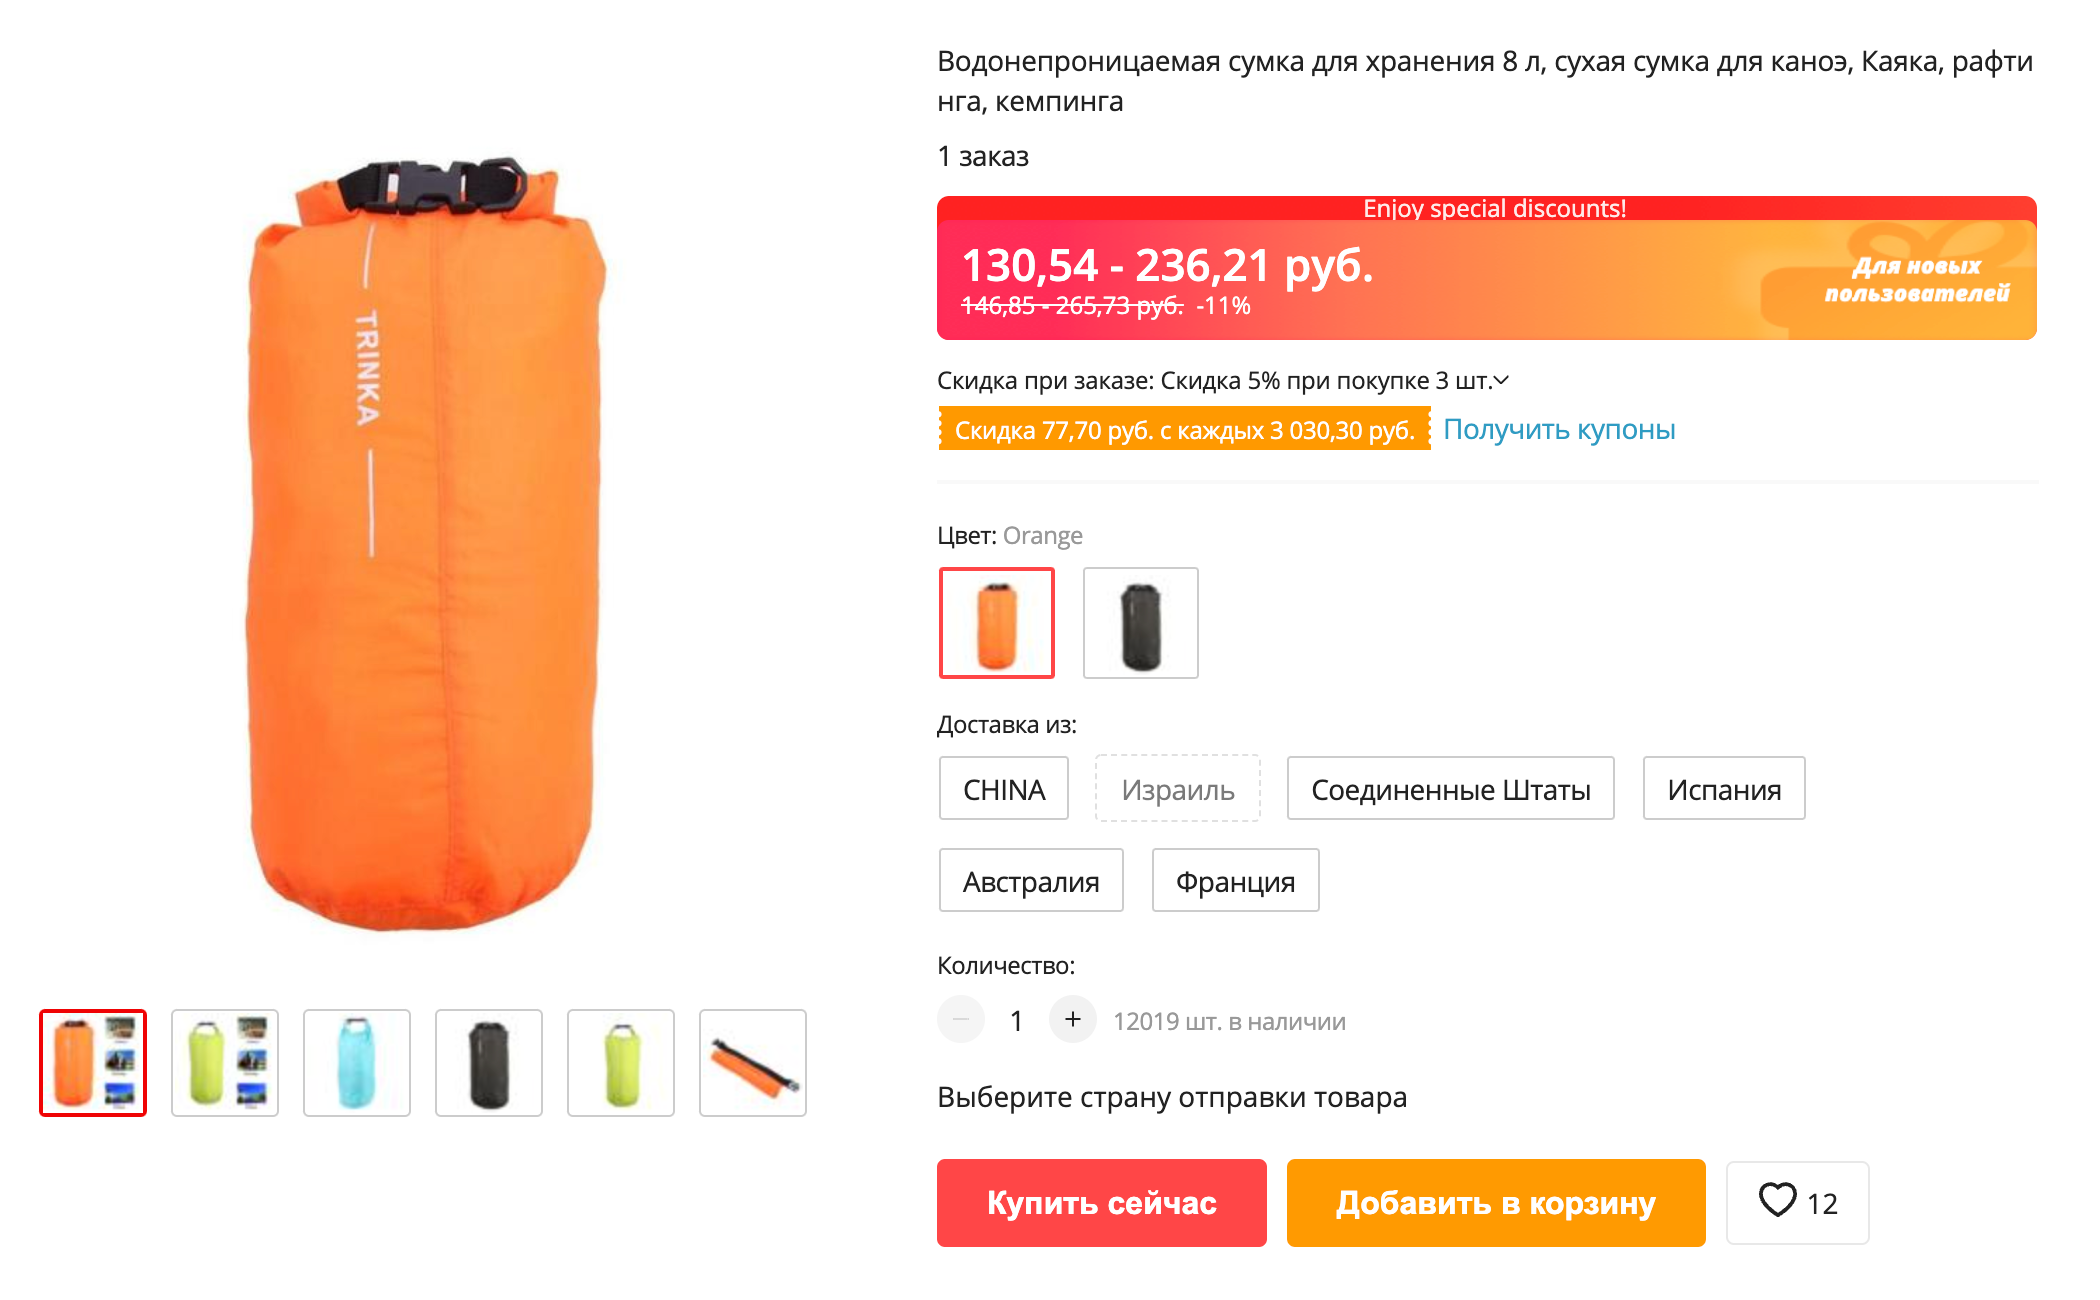 Примерно так выглядит гермомешок, в который я набираю воду на стоянке. Его можно купить на «Алиэкспрессе». Источник: aliexpress.ru